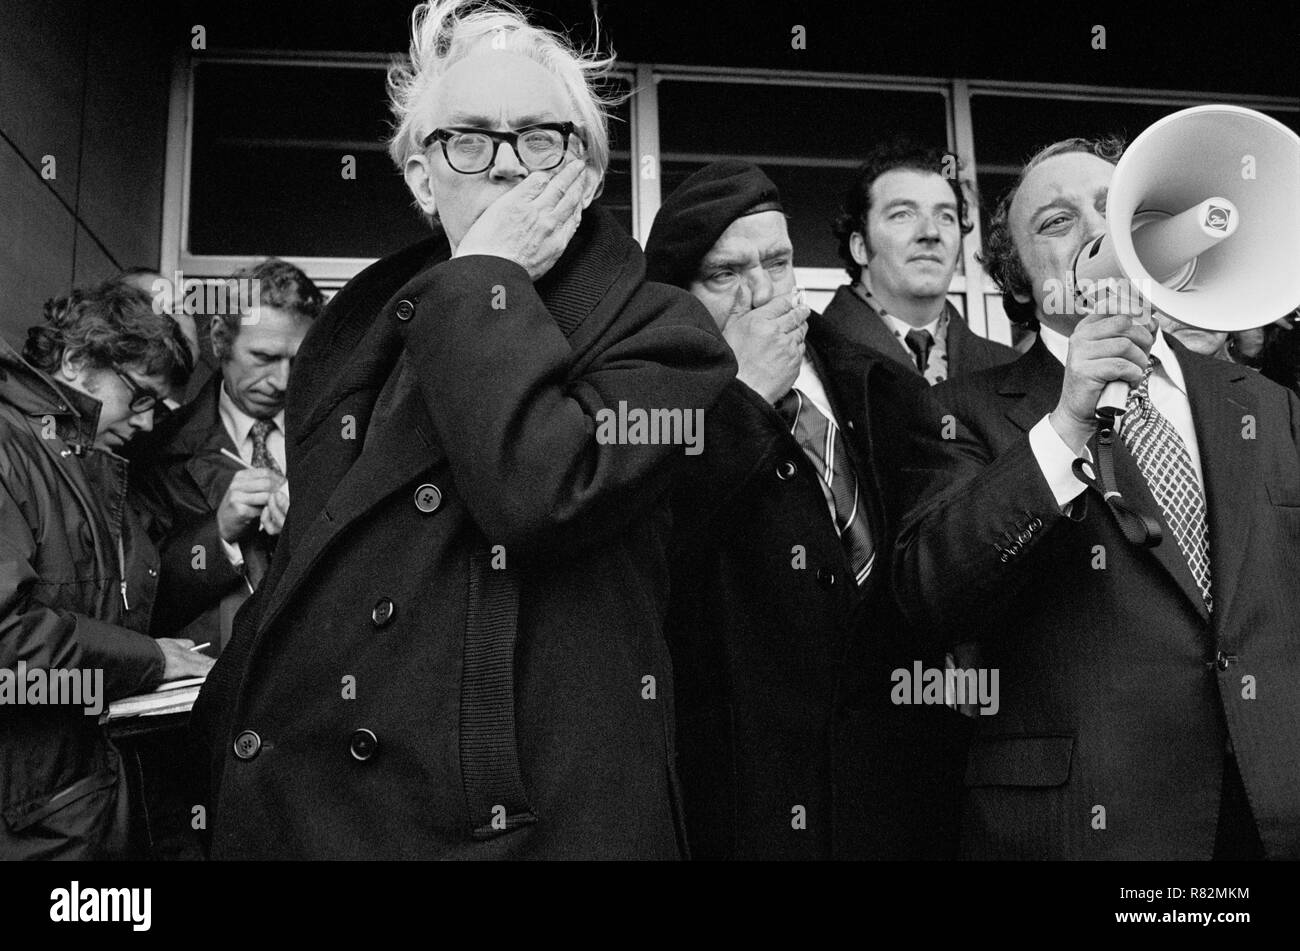 Michael Foot MP lors d'une démonstration par l'Ebbw Vale métallurgistes unis contre la fermeture de leur usine, Ebbw Vale Rugby Club, Nouvelle-Galles du Sud, février 1975. Banque D'Images